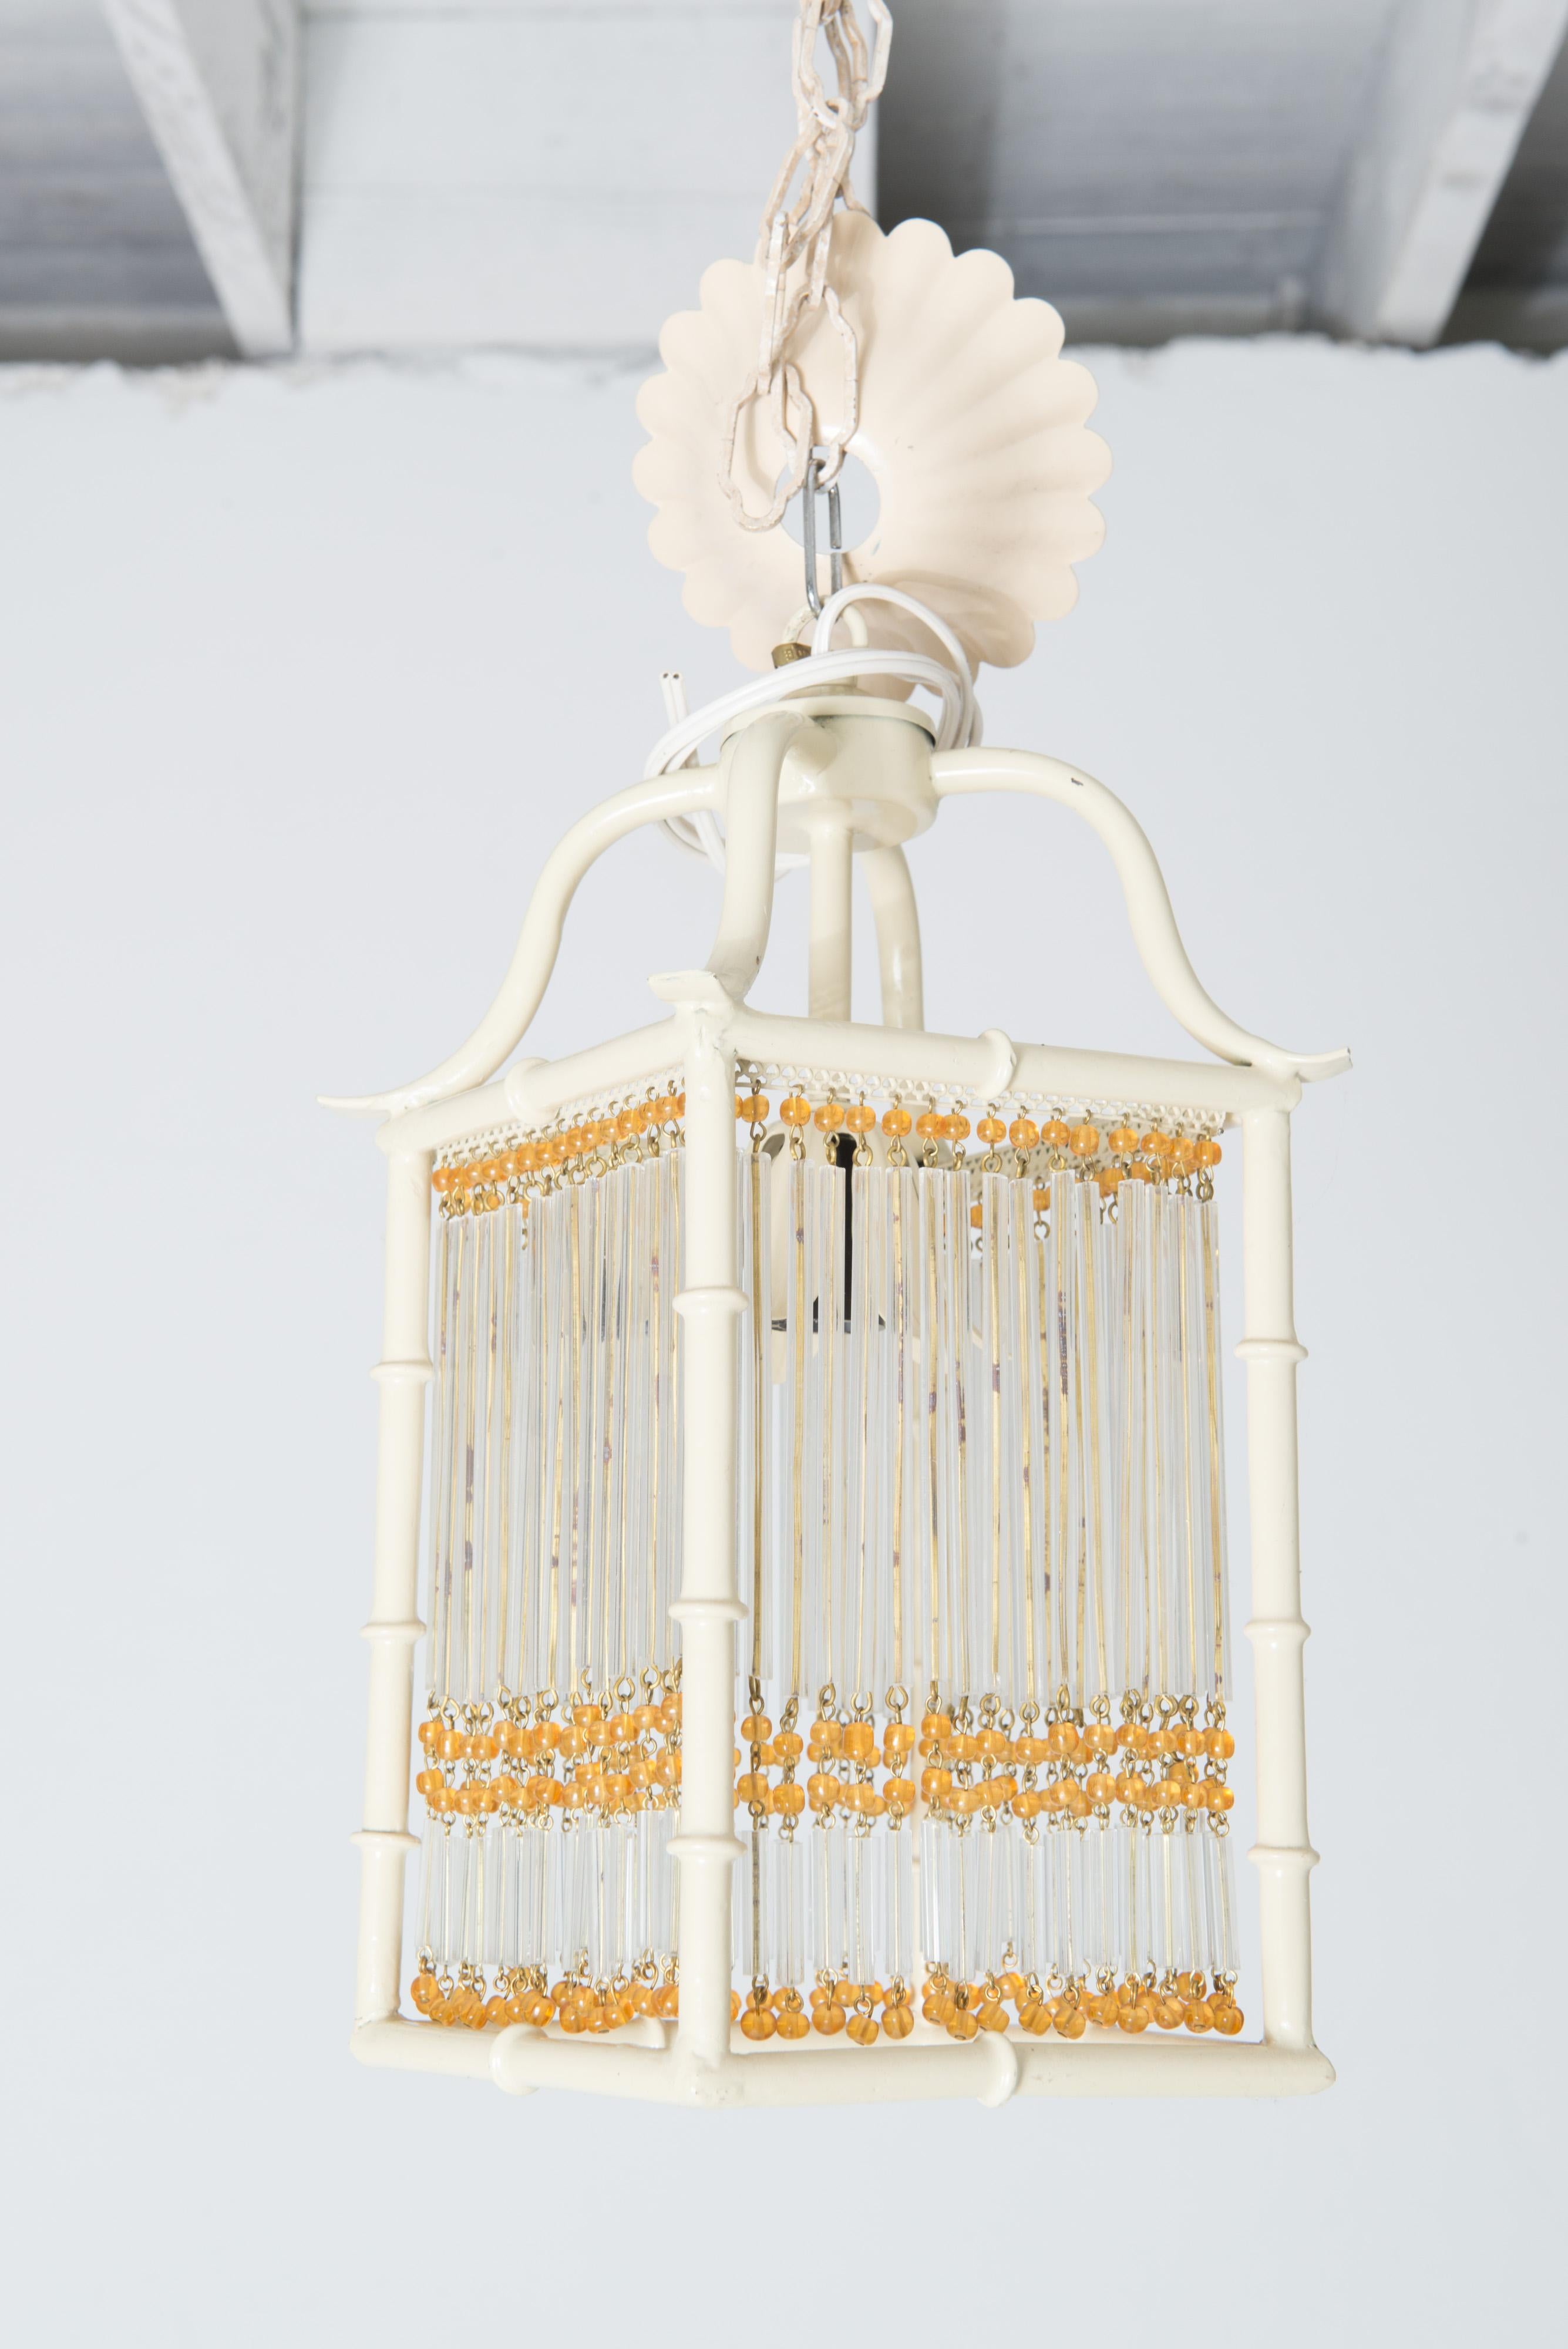 Il s'agit d'une paire de petites lanternes en métal peint blanc de style pagode en faux bambou.
Chaque lanterne Chinoiserie est ornée de perles de verre dorées et de tiges de verre transparent qui décorent les quatre côtés plats et ouverts de la